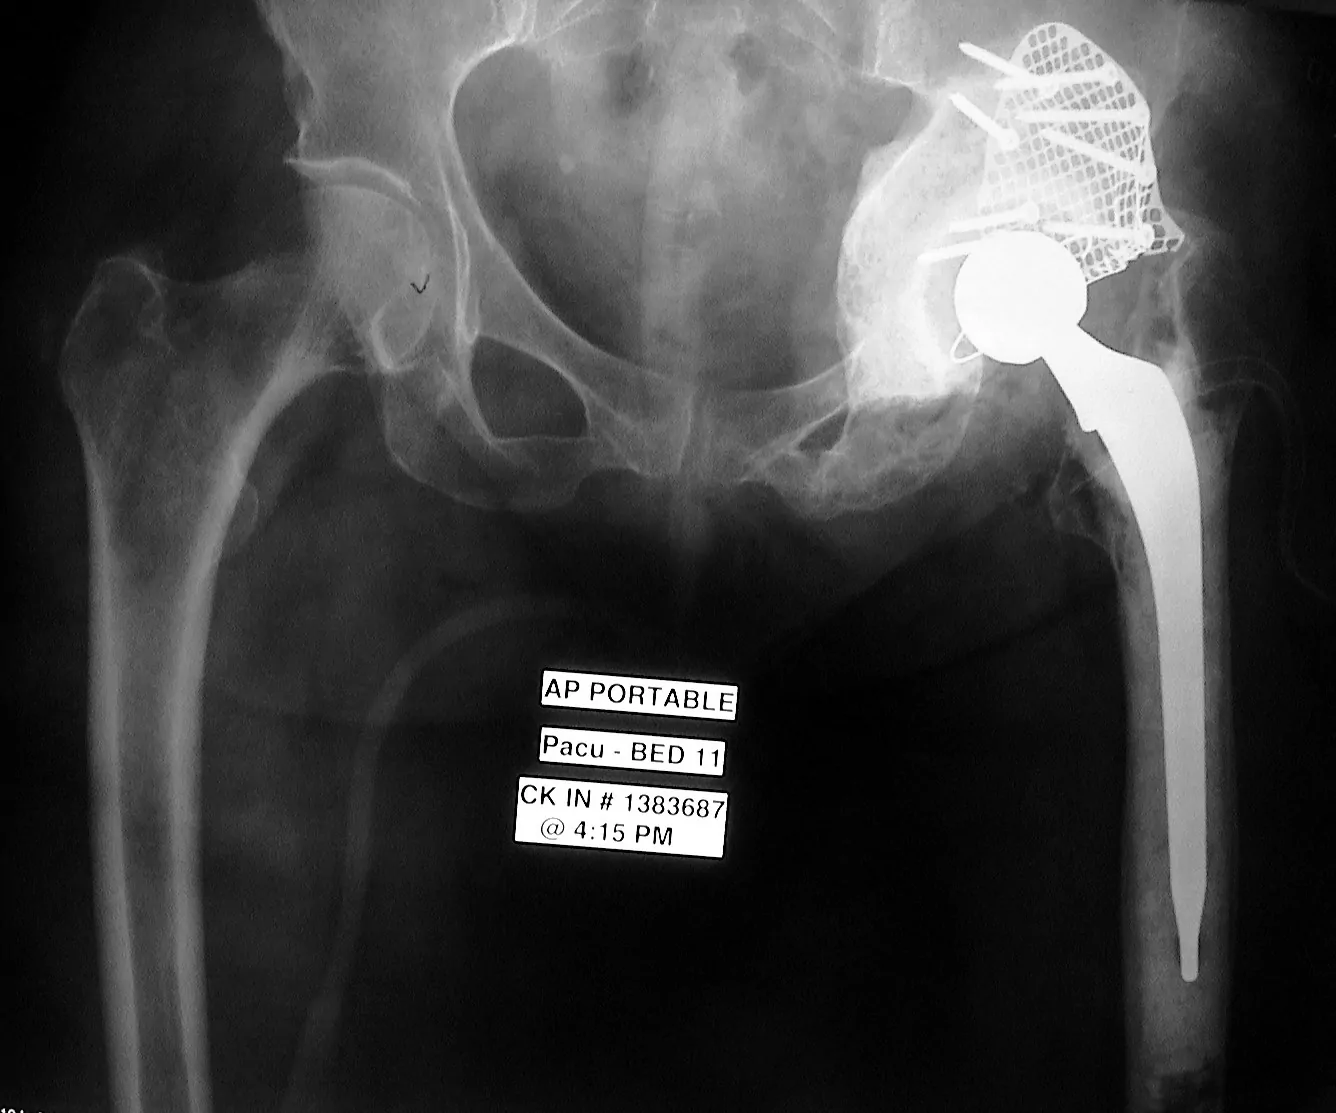 Especialista en Cirugía Ortopédica Dr. Manuel Villanueva. Defecto masivo acetabular tratado con impactación de injertos.